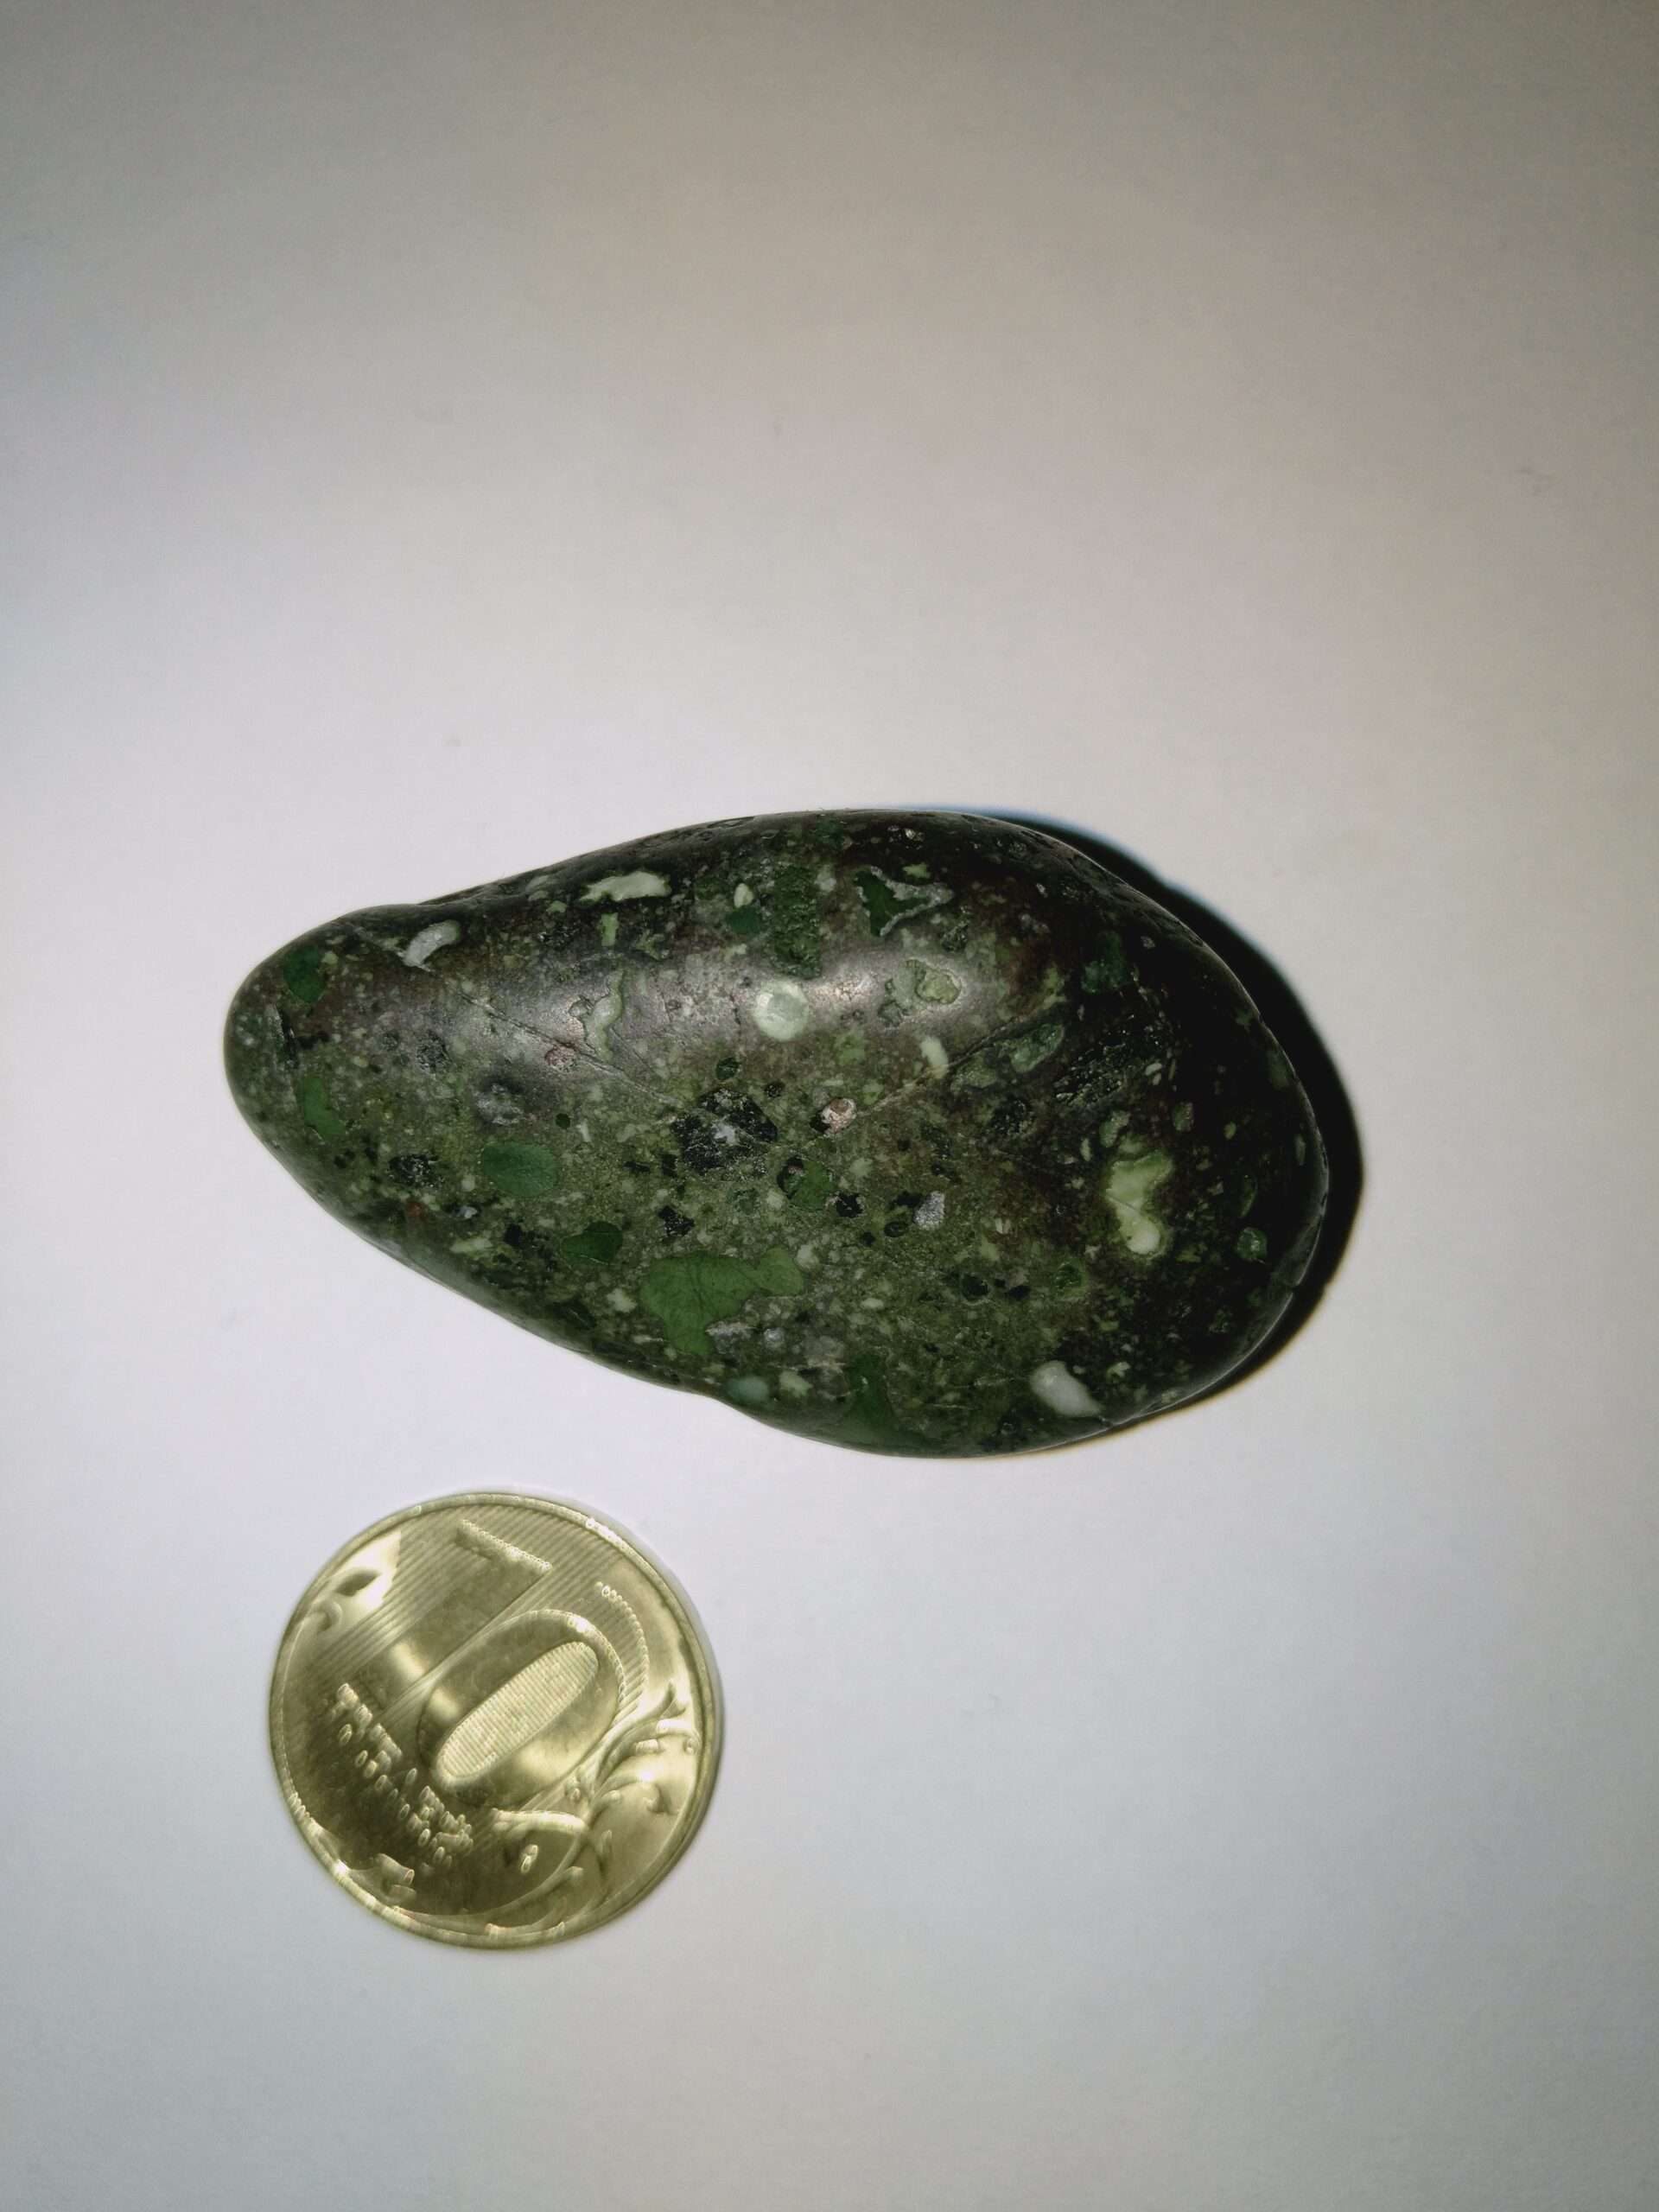 Meteorite Unique Green Achondrite